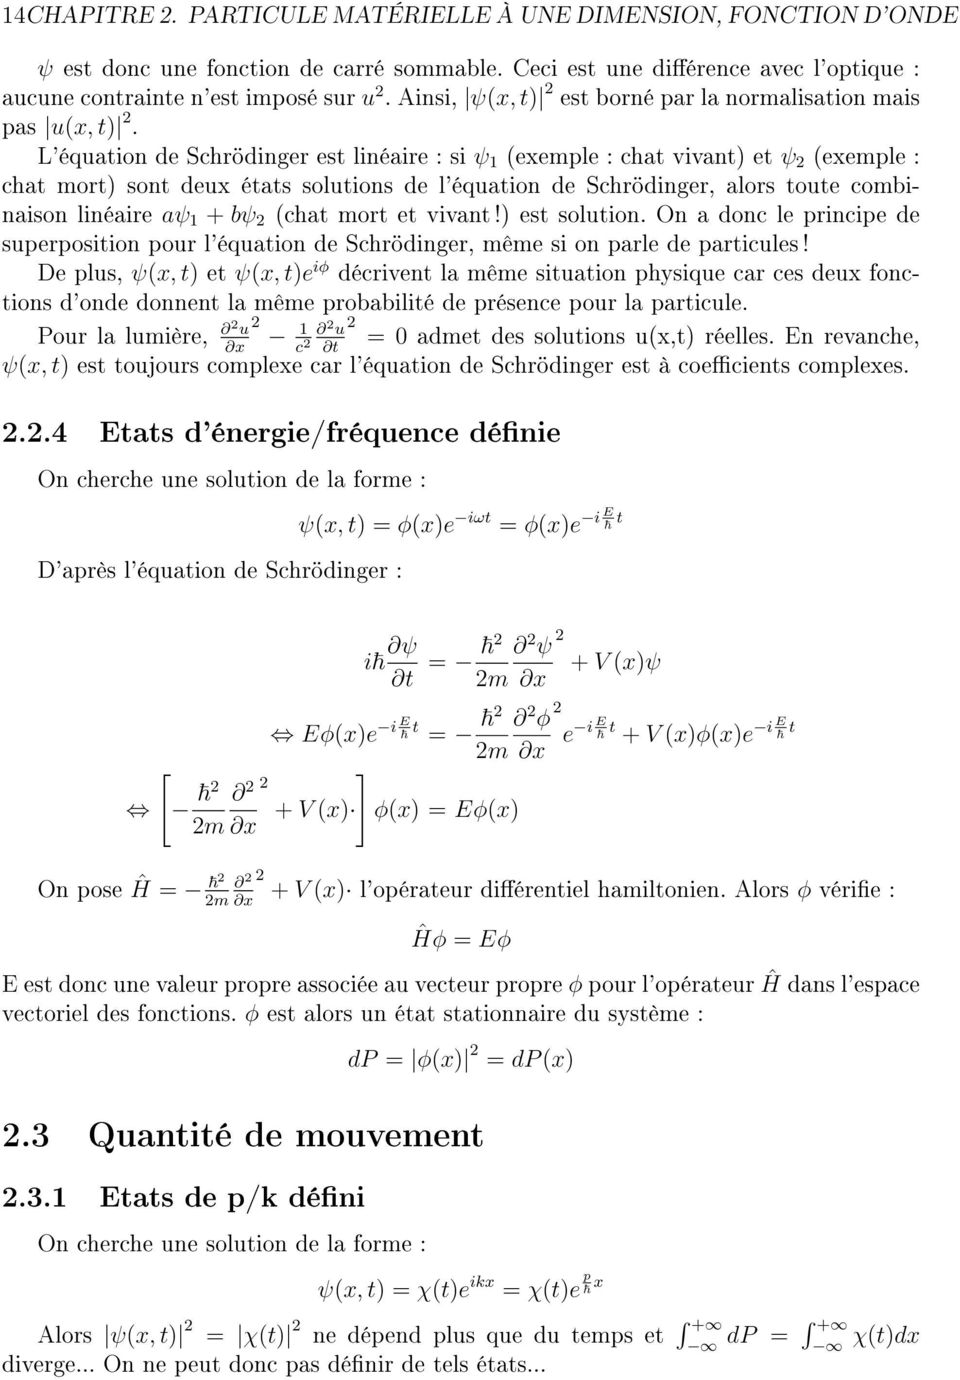 L'équation de Schrödinger est linéaire : si ψ 1 (exemple : chat vivant) et ψ (exemple : chat mort) sont deux états solutions de l'équation de Schrödinger, alors toute combinaison linéaire aψ 1 + bψ